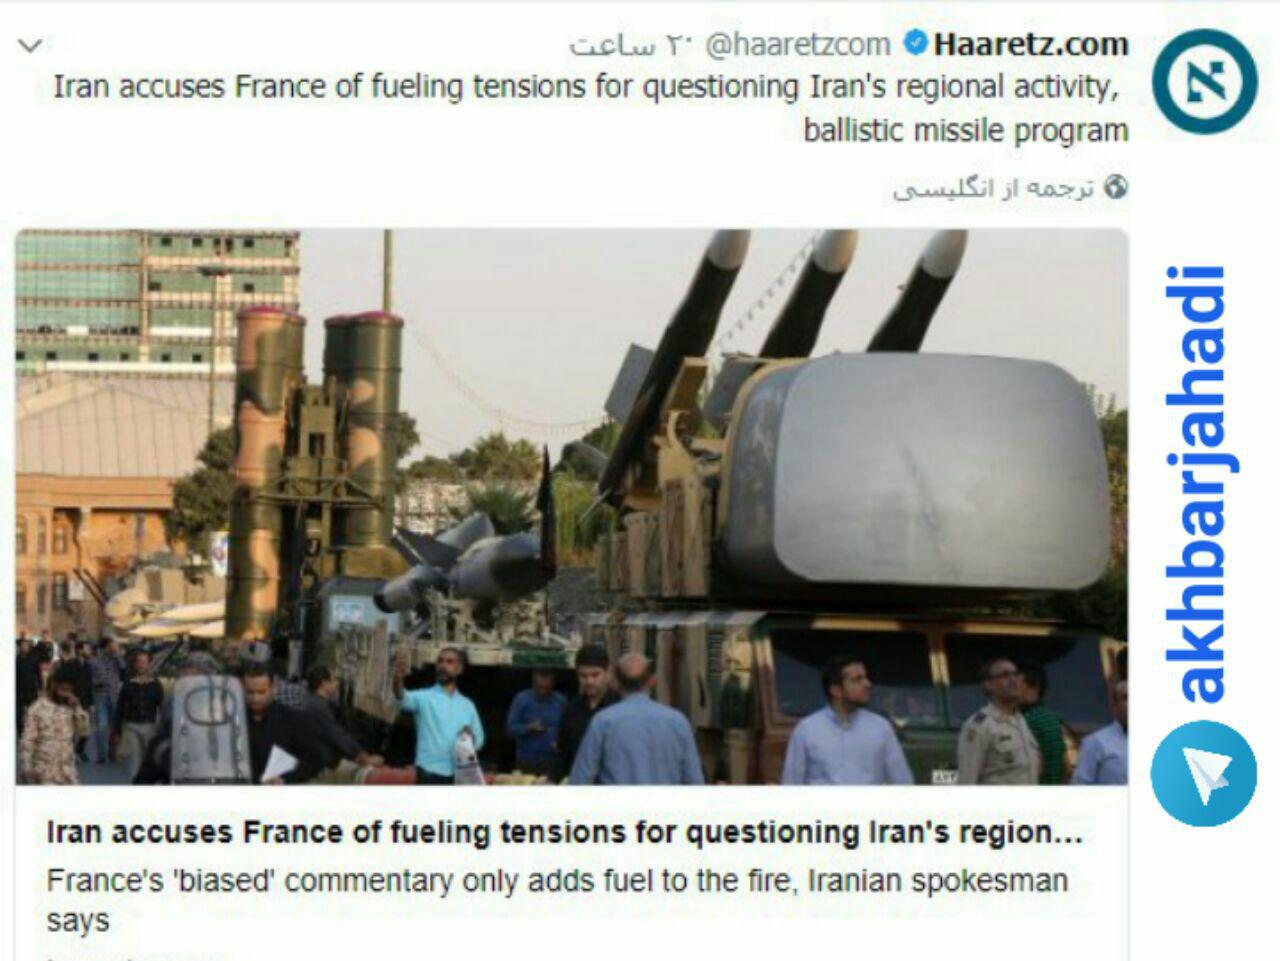 روزنامه صهیونیستی هاآرتص: ایران فرانسه را متهم به افزایش تنش در خاورمیانه کرده است